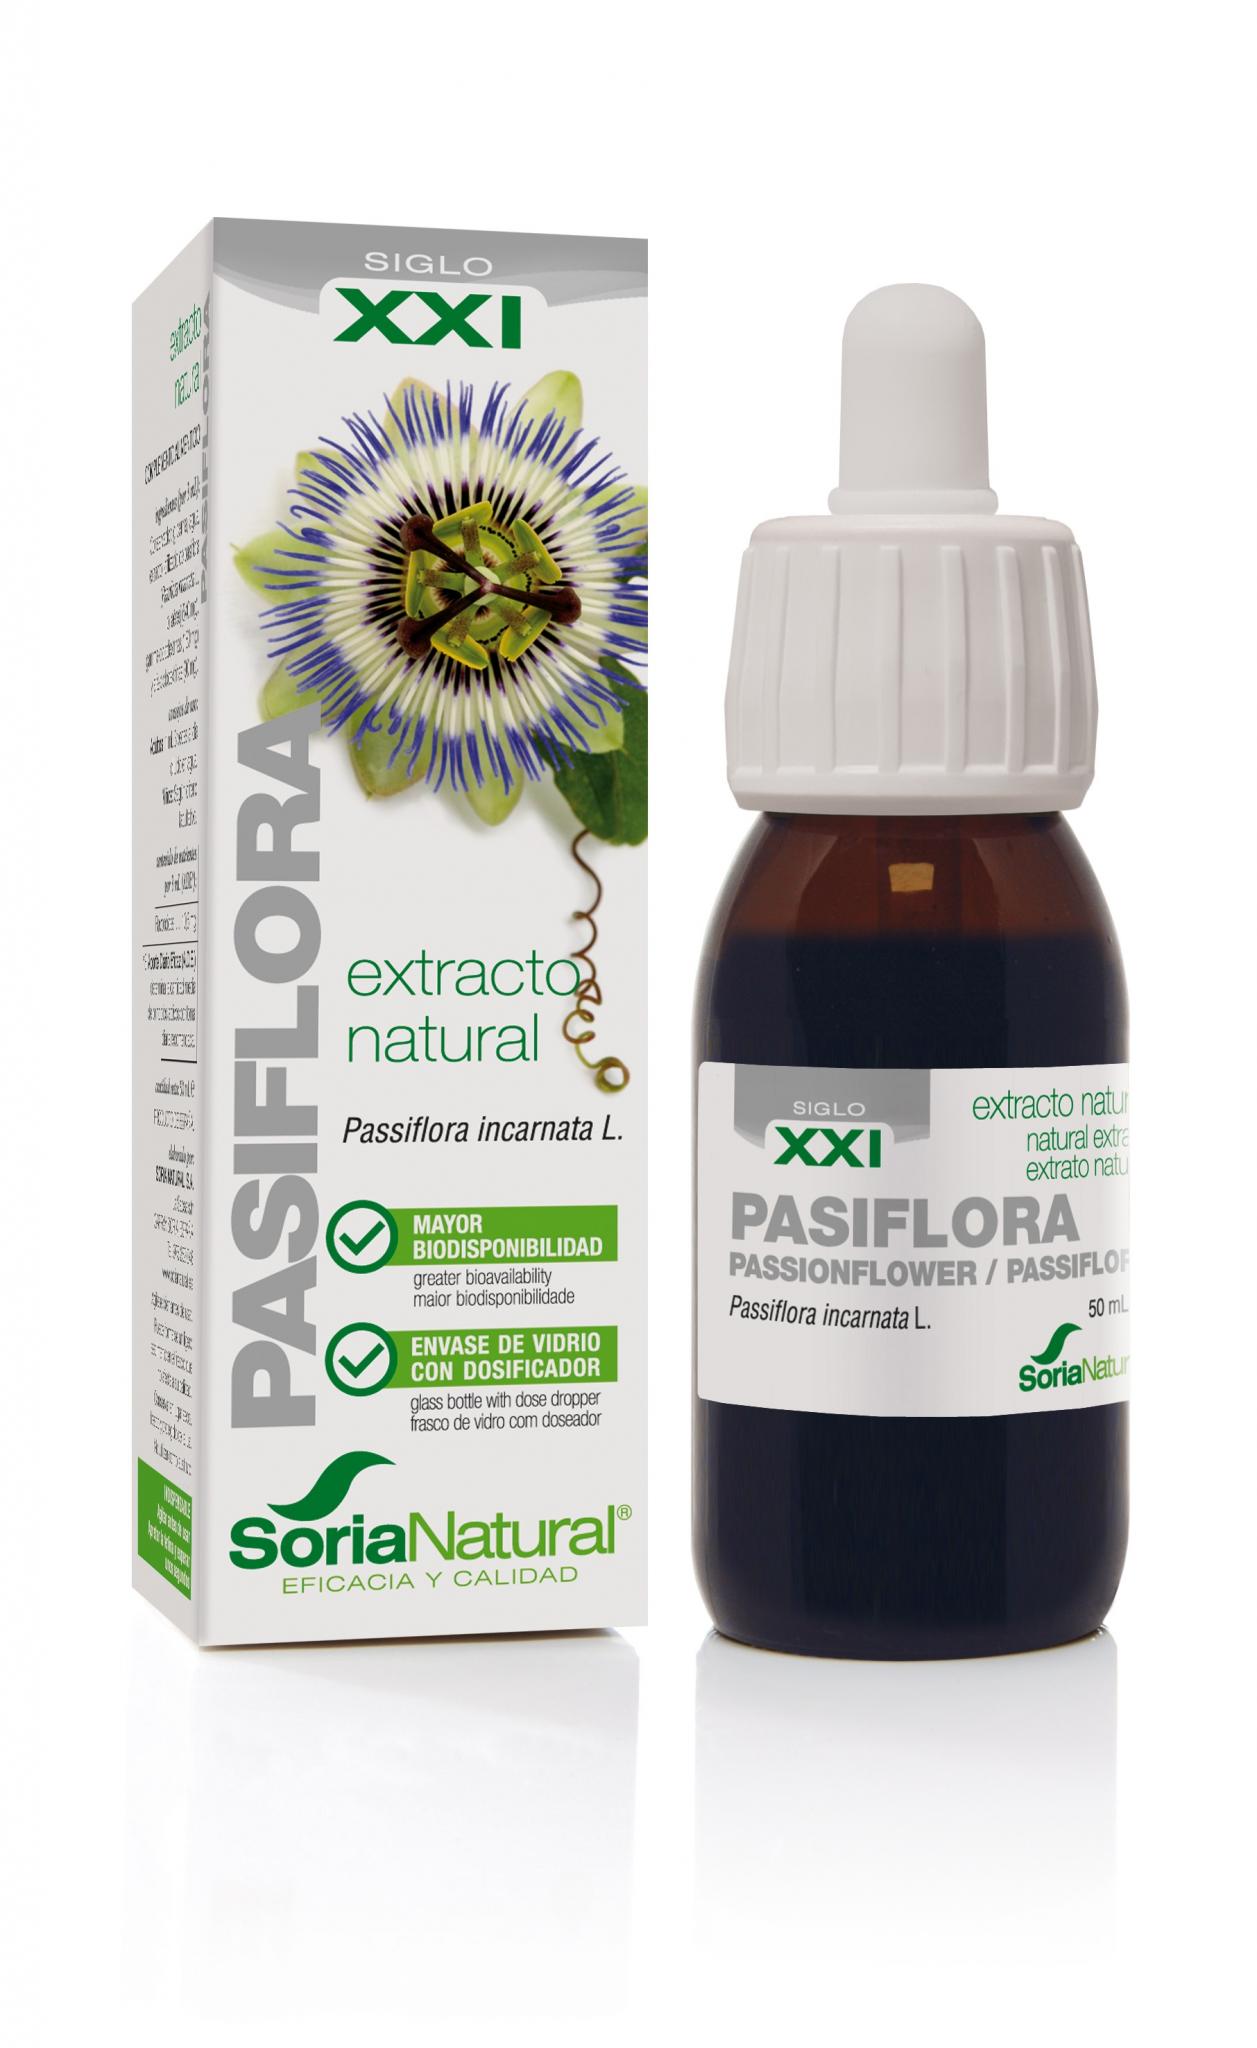 extracto-siglo-XXI-pasiflora-soria-natural-1